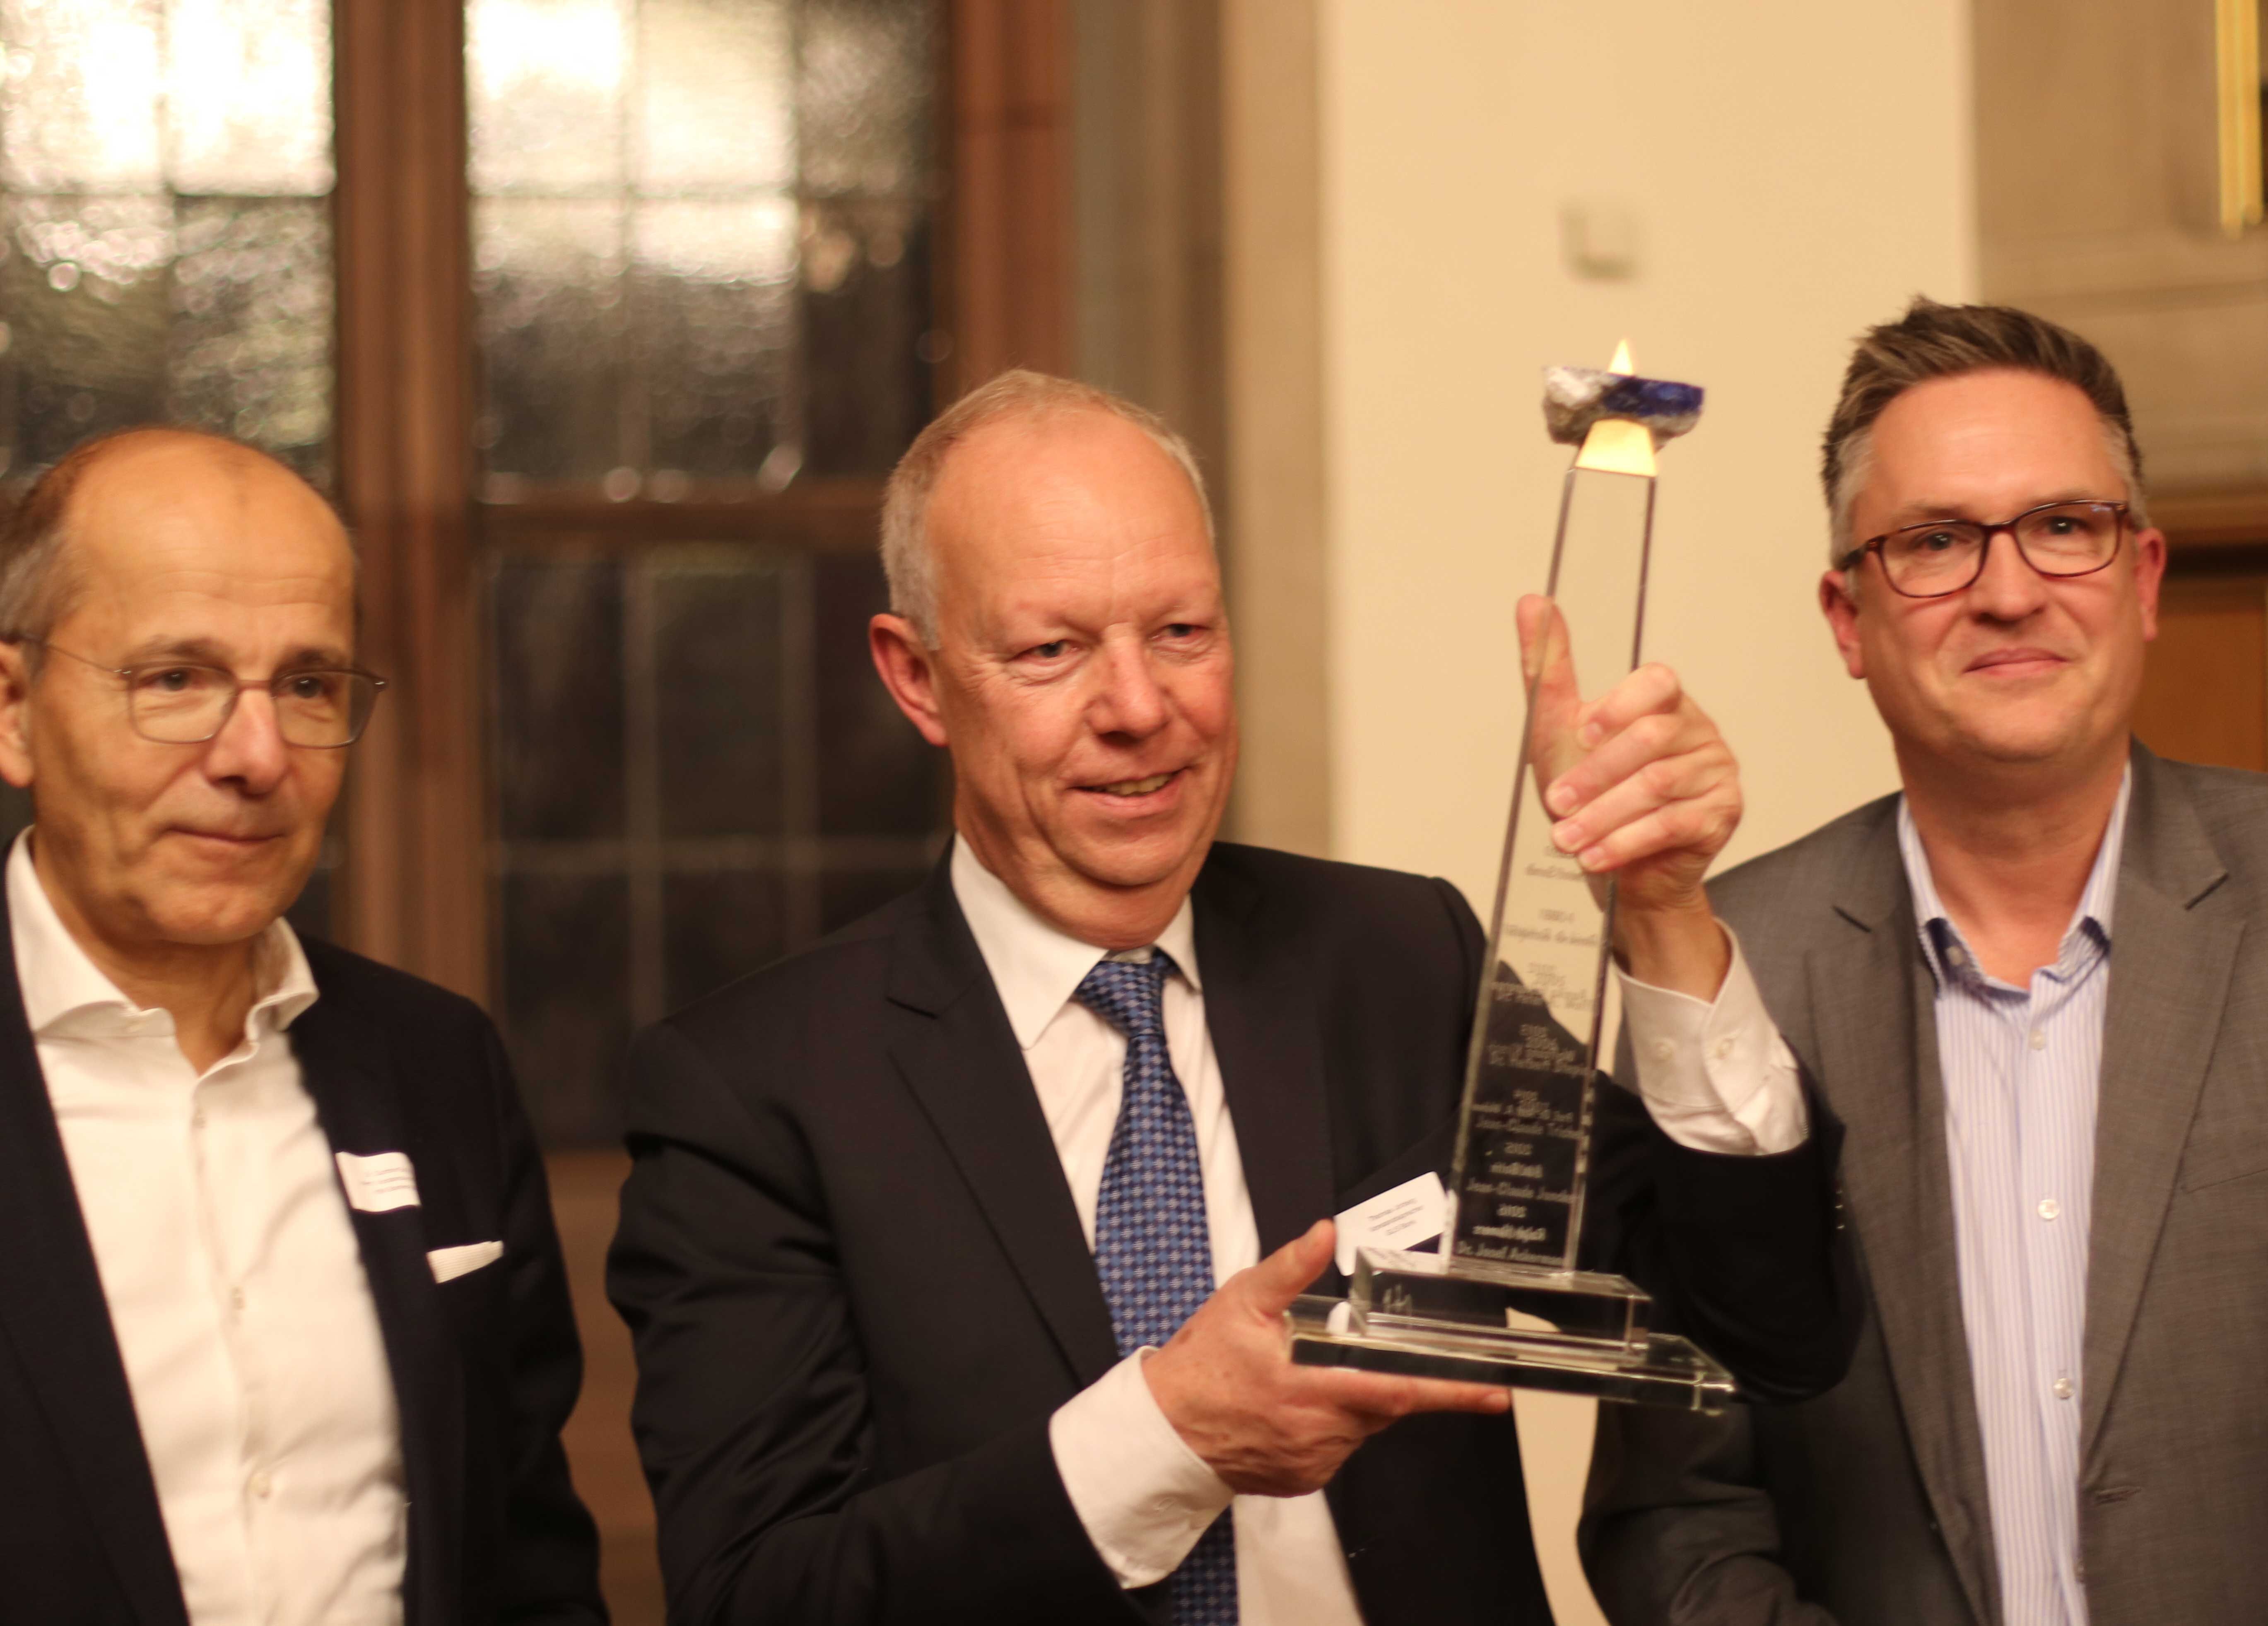 Thomas Jorberg nimmt Preis "European Banker of the Year" entgegen